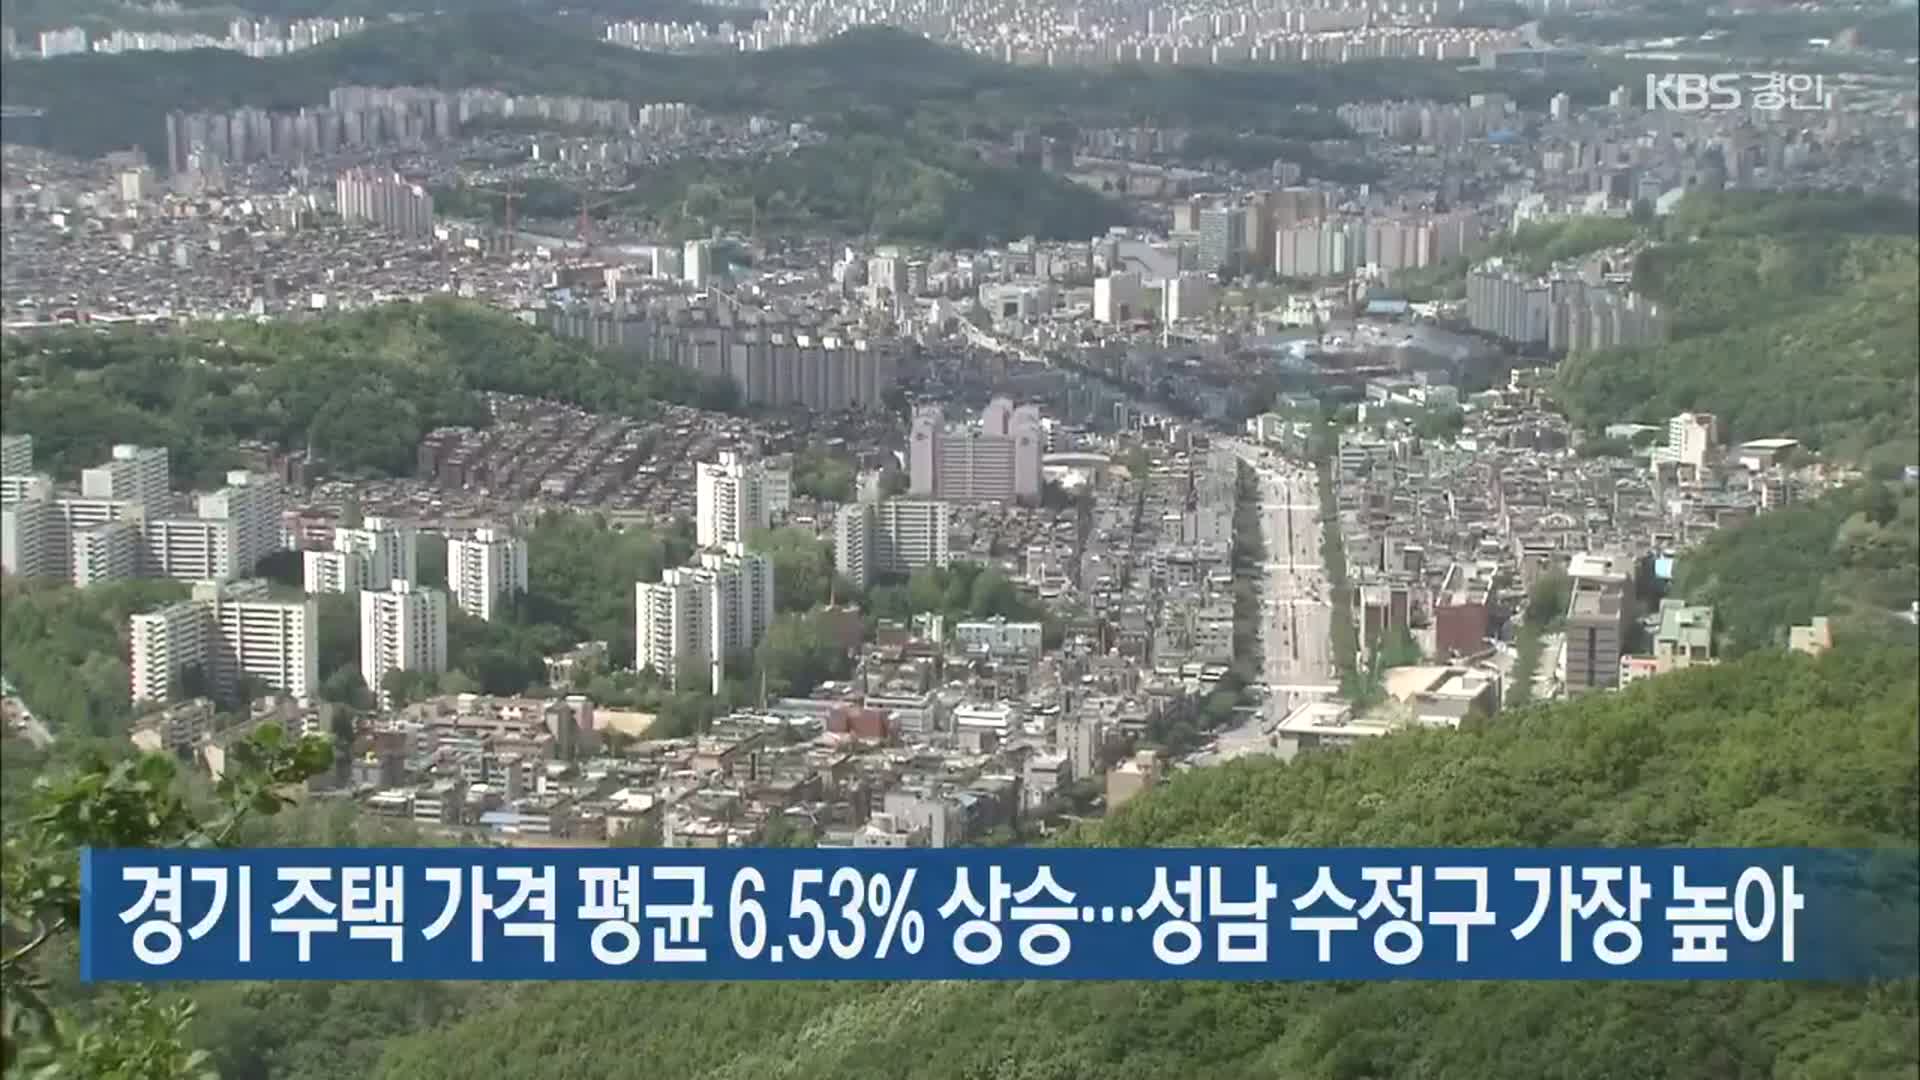 경기 주택 가격 평균 6.53% 상승…성남 수정구 가장 높아